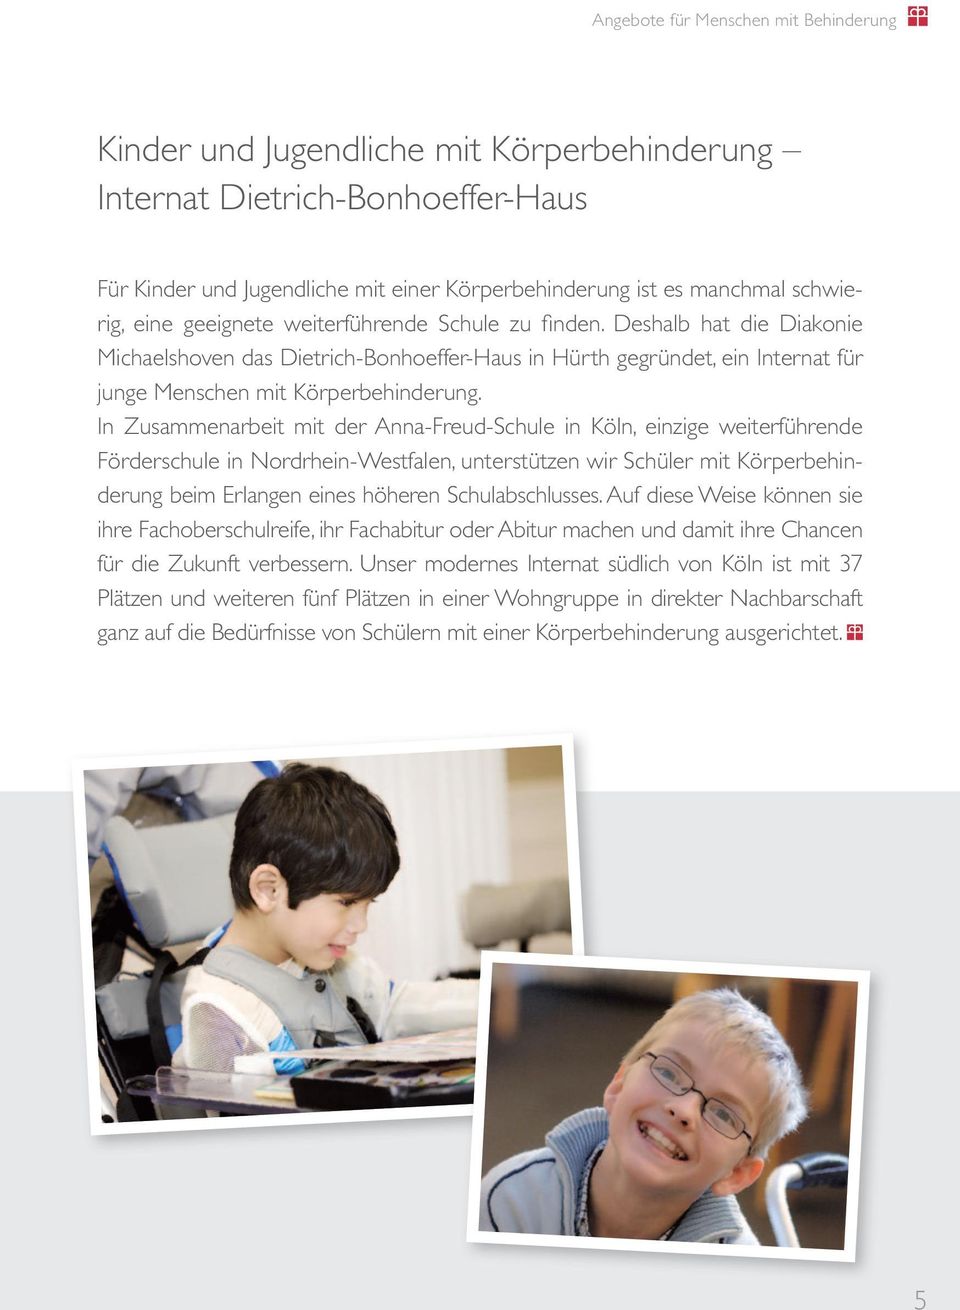 In Zusammenarbeit mit der Anna-Freud-Schule in Köln, einzige weiterführende Förderschule in Nordrhein-Westfalen, unterstützen wir Schüler mit Körperbehinderung beim Erlangen eines höheren